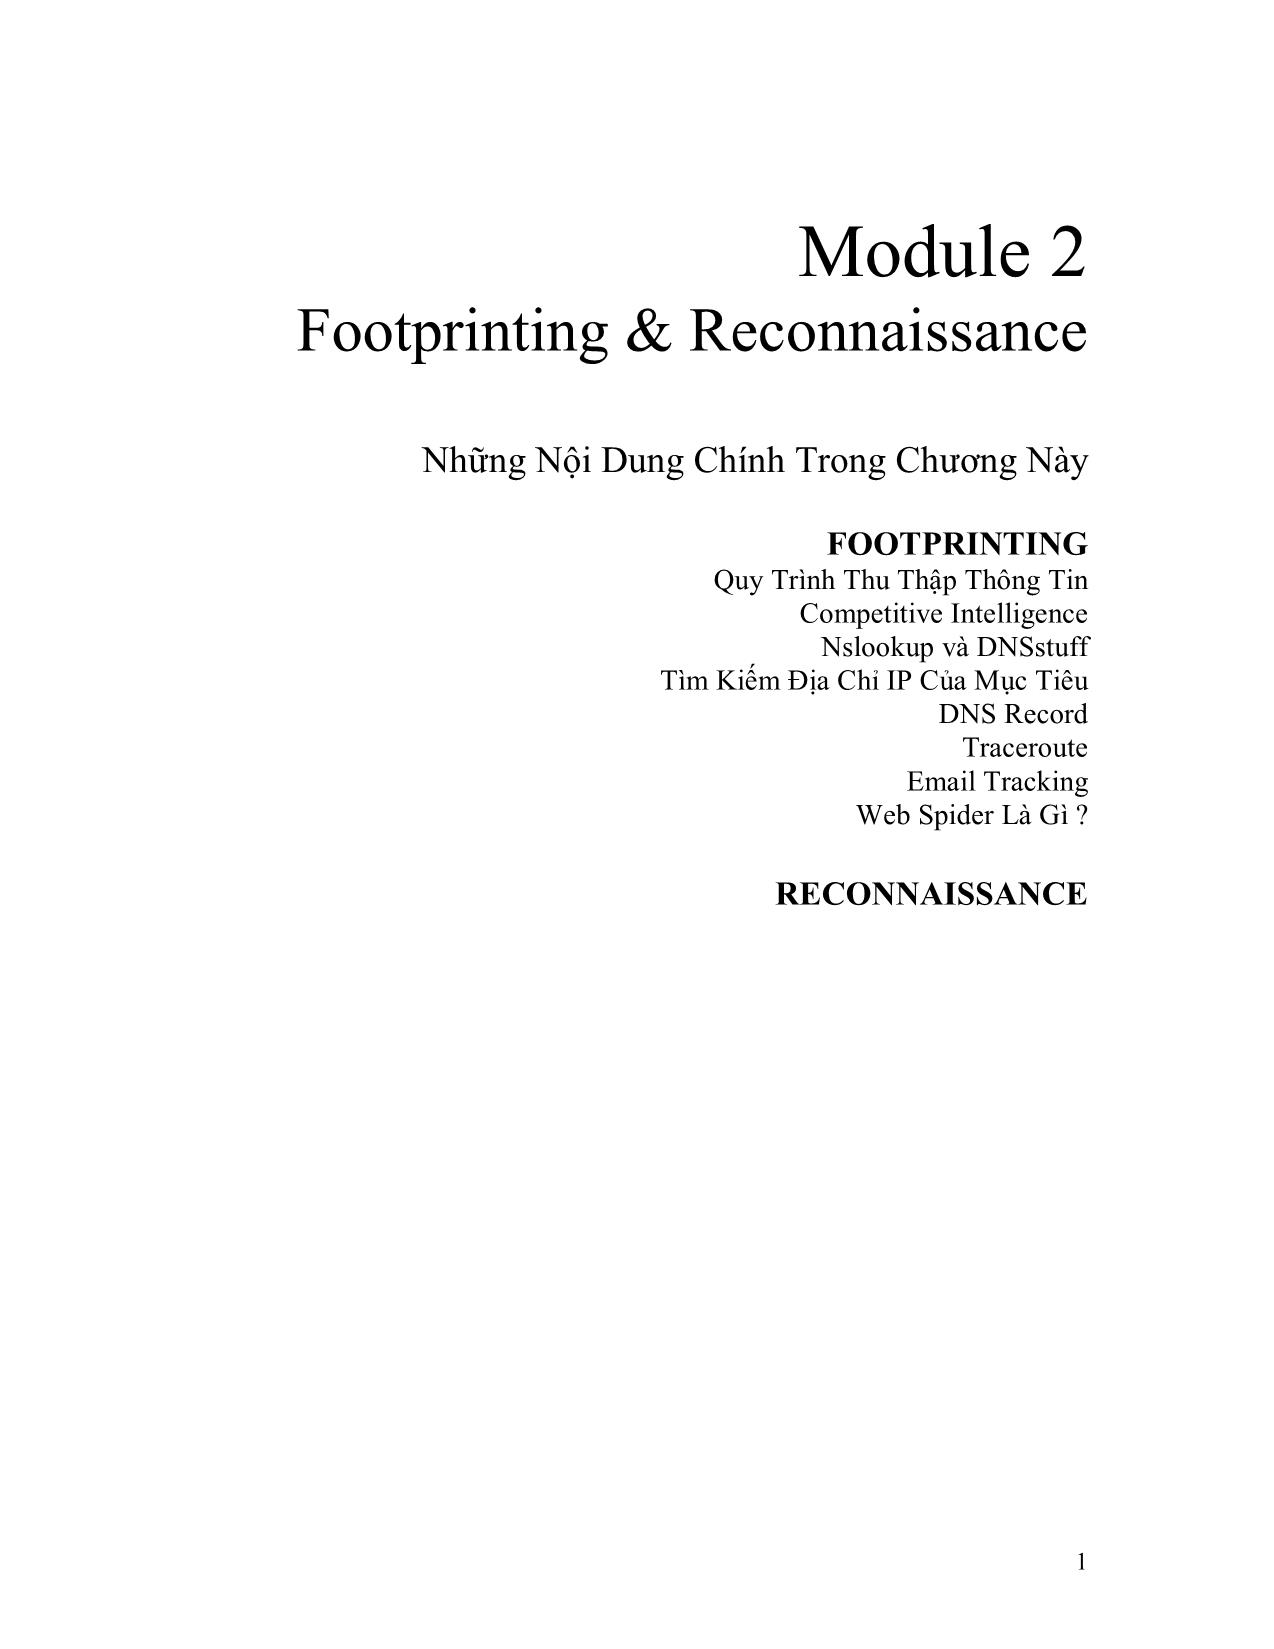 Module 2: Footprinting và reconnaissance trang 1